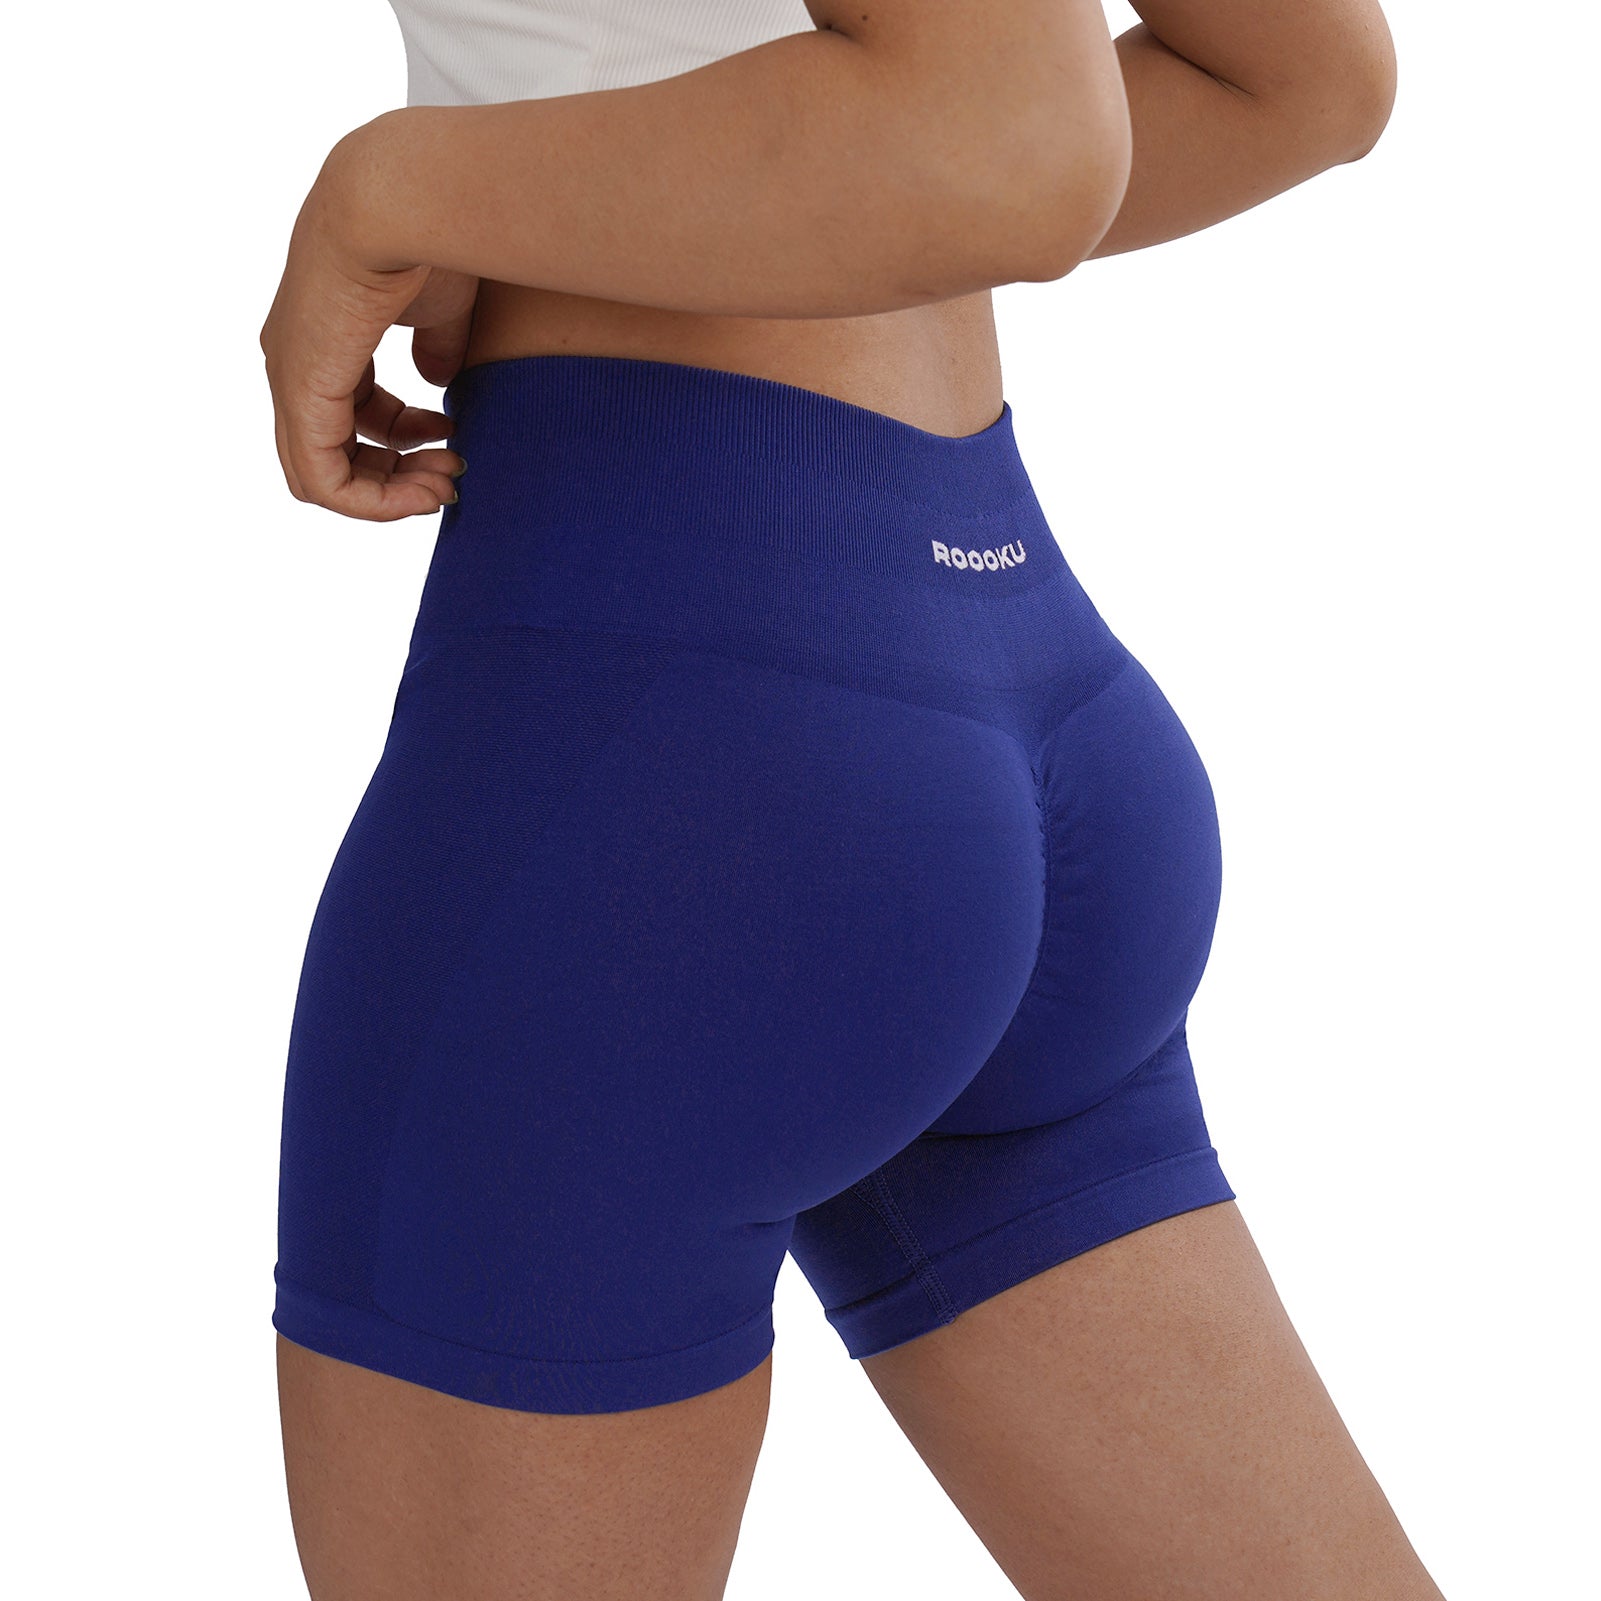 Women's Seamless Workout Shorts  Butt-lifting & High Waist Booty  Gym Shorts